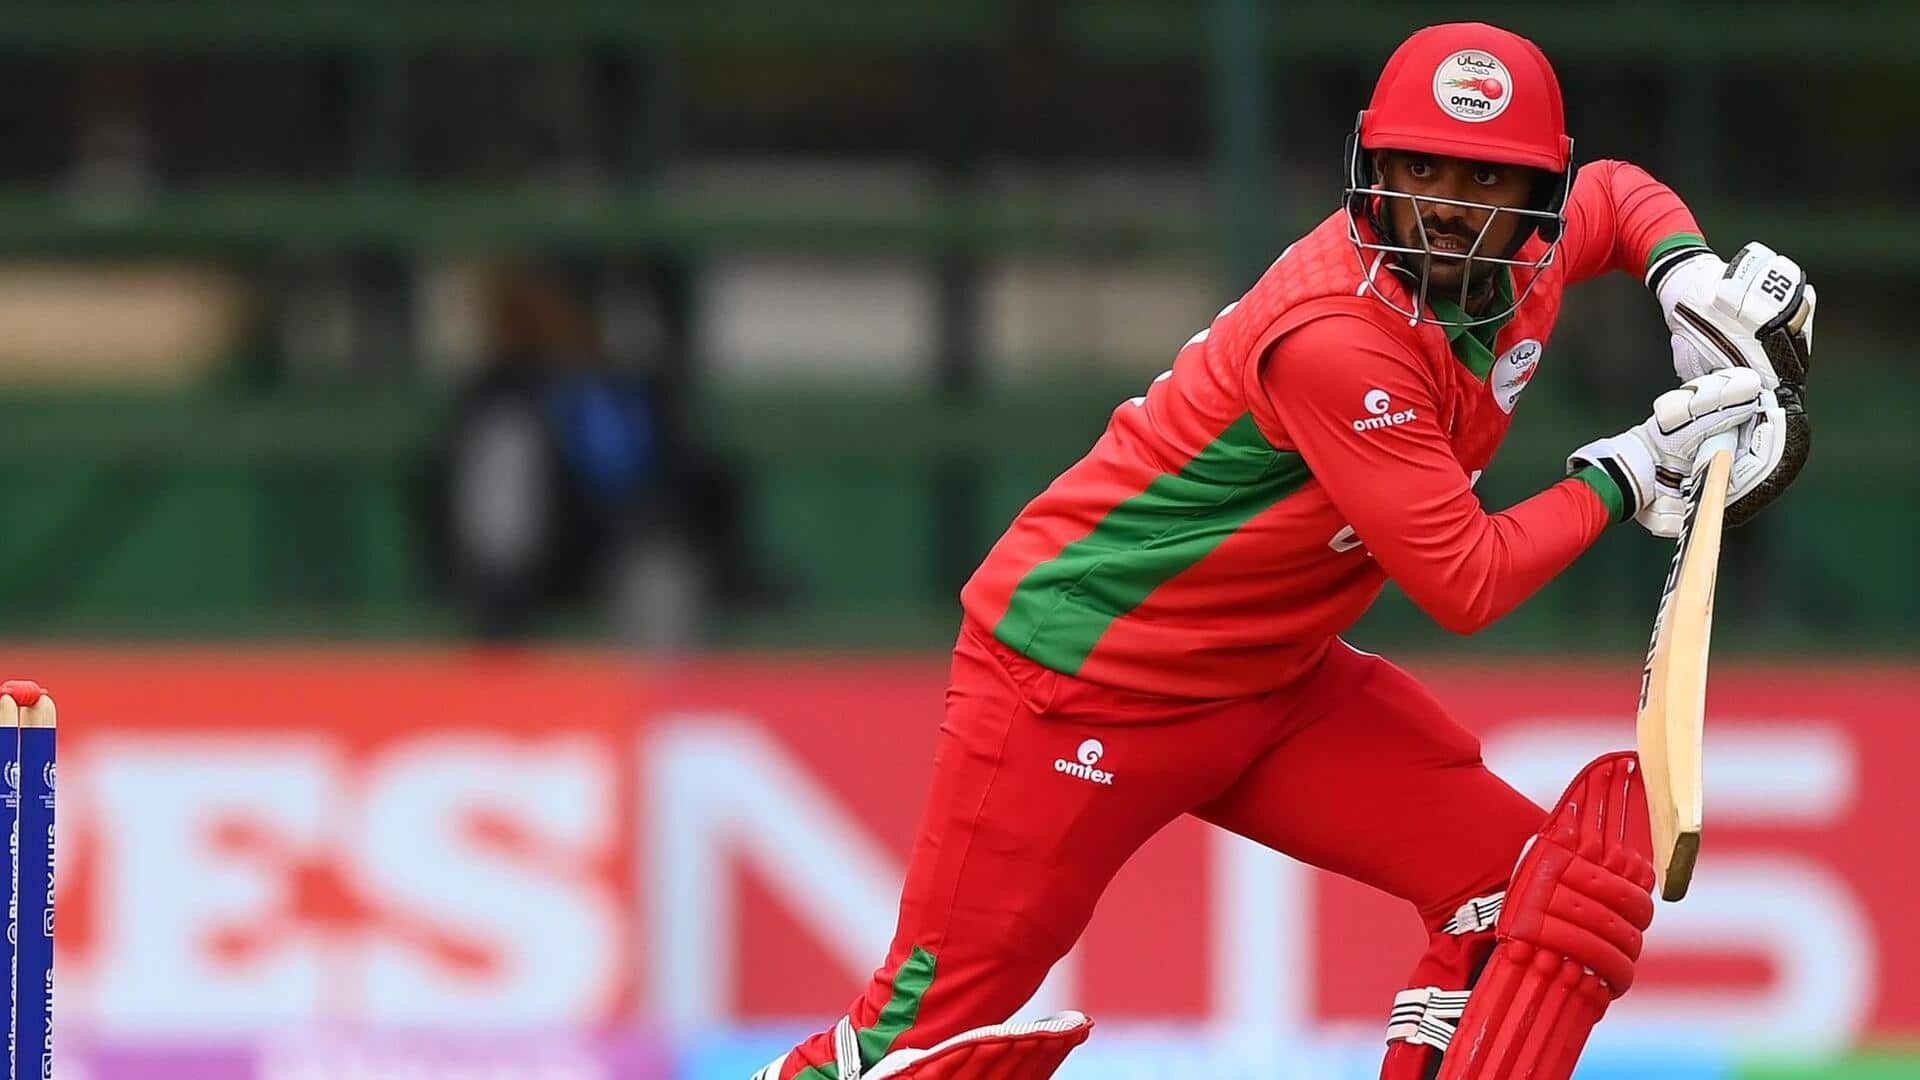 ओमान बनाम वेस्टइंडीज: शोएब खान ने लगाया वनडे करियर का 7वां अर्धशतक, जानिए उनके आंकड़े